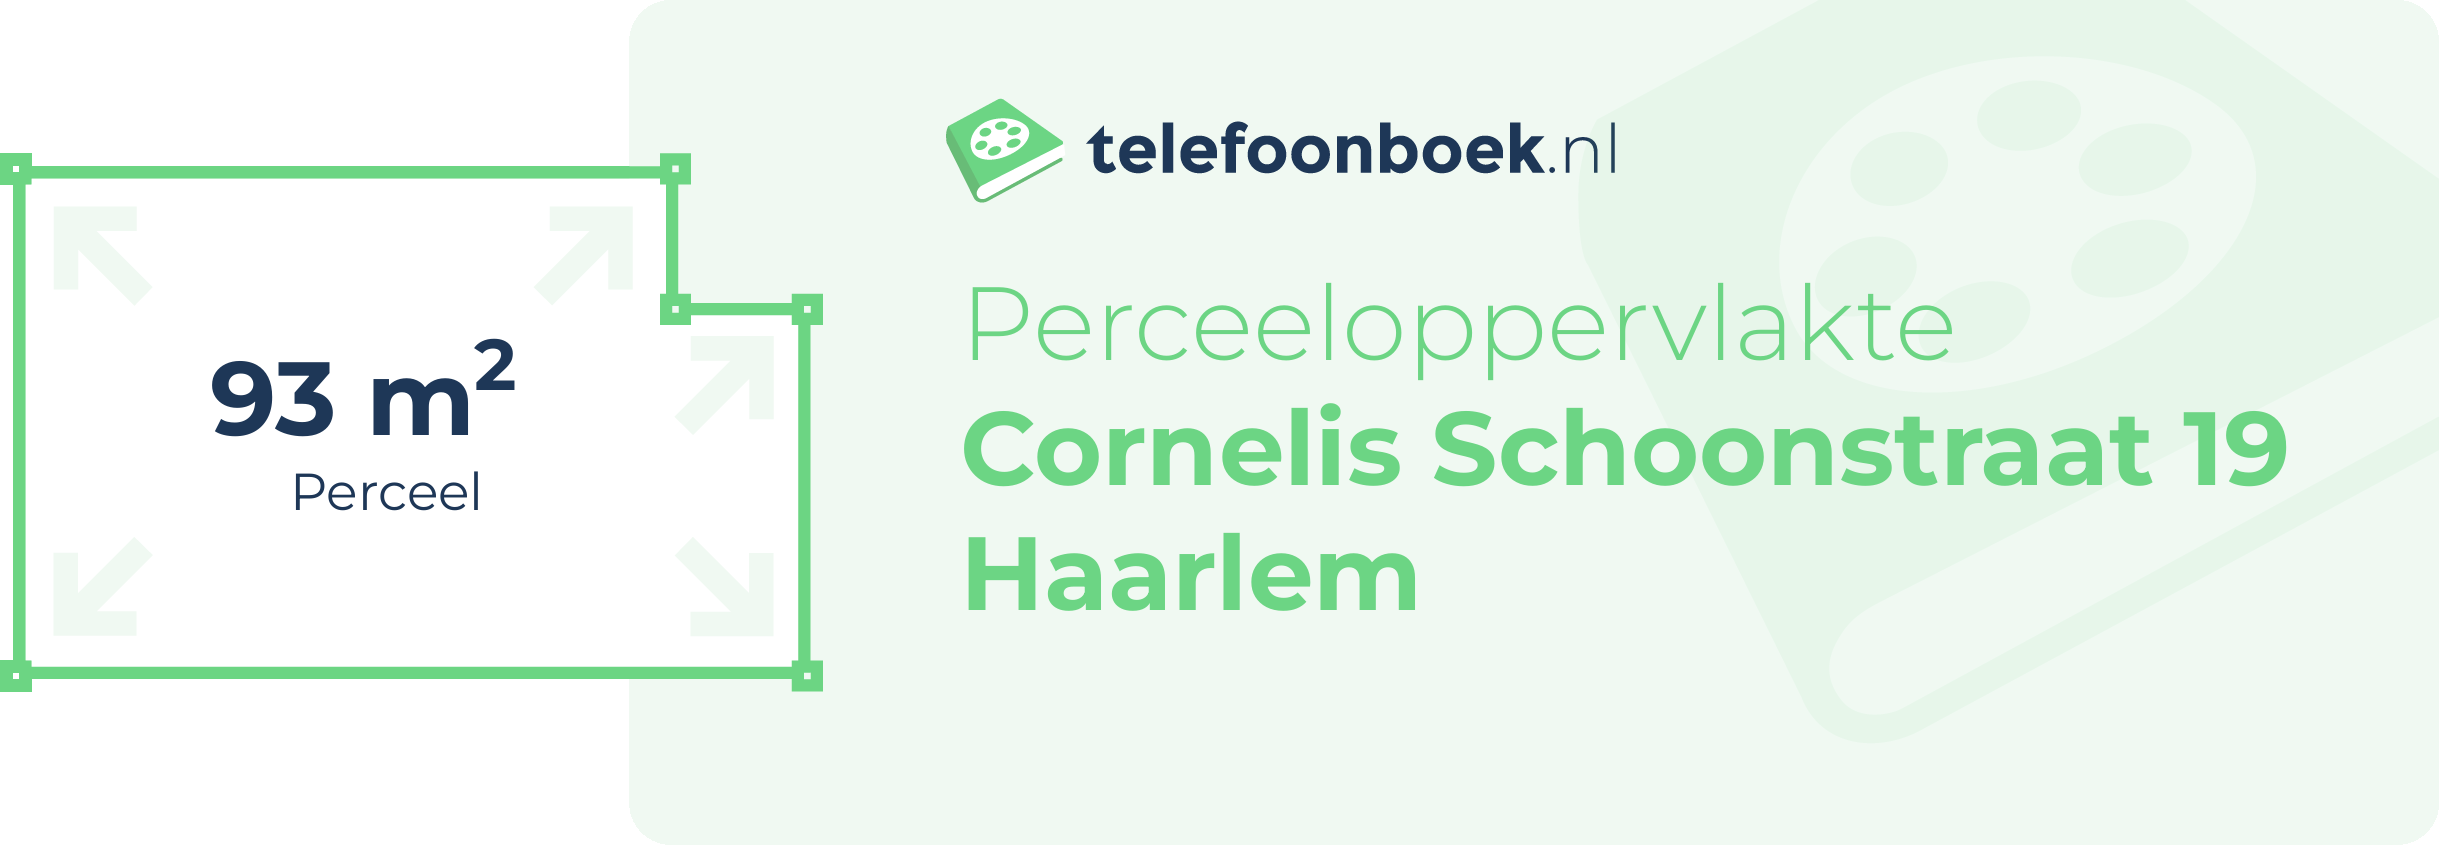 Perceeloppervlakte Cornelis Schoonstraat 19 Haarlem